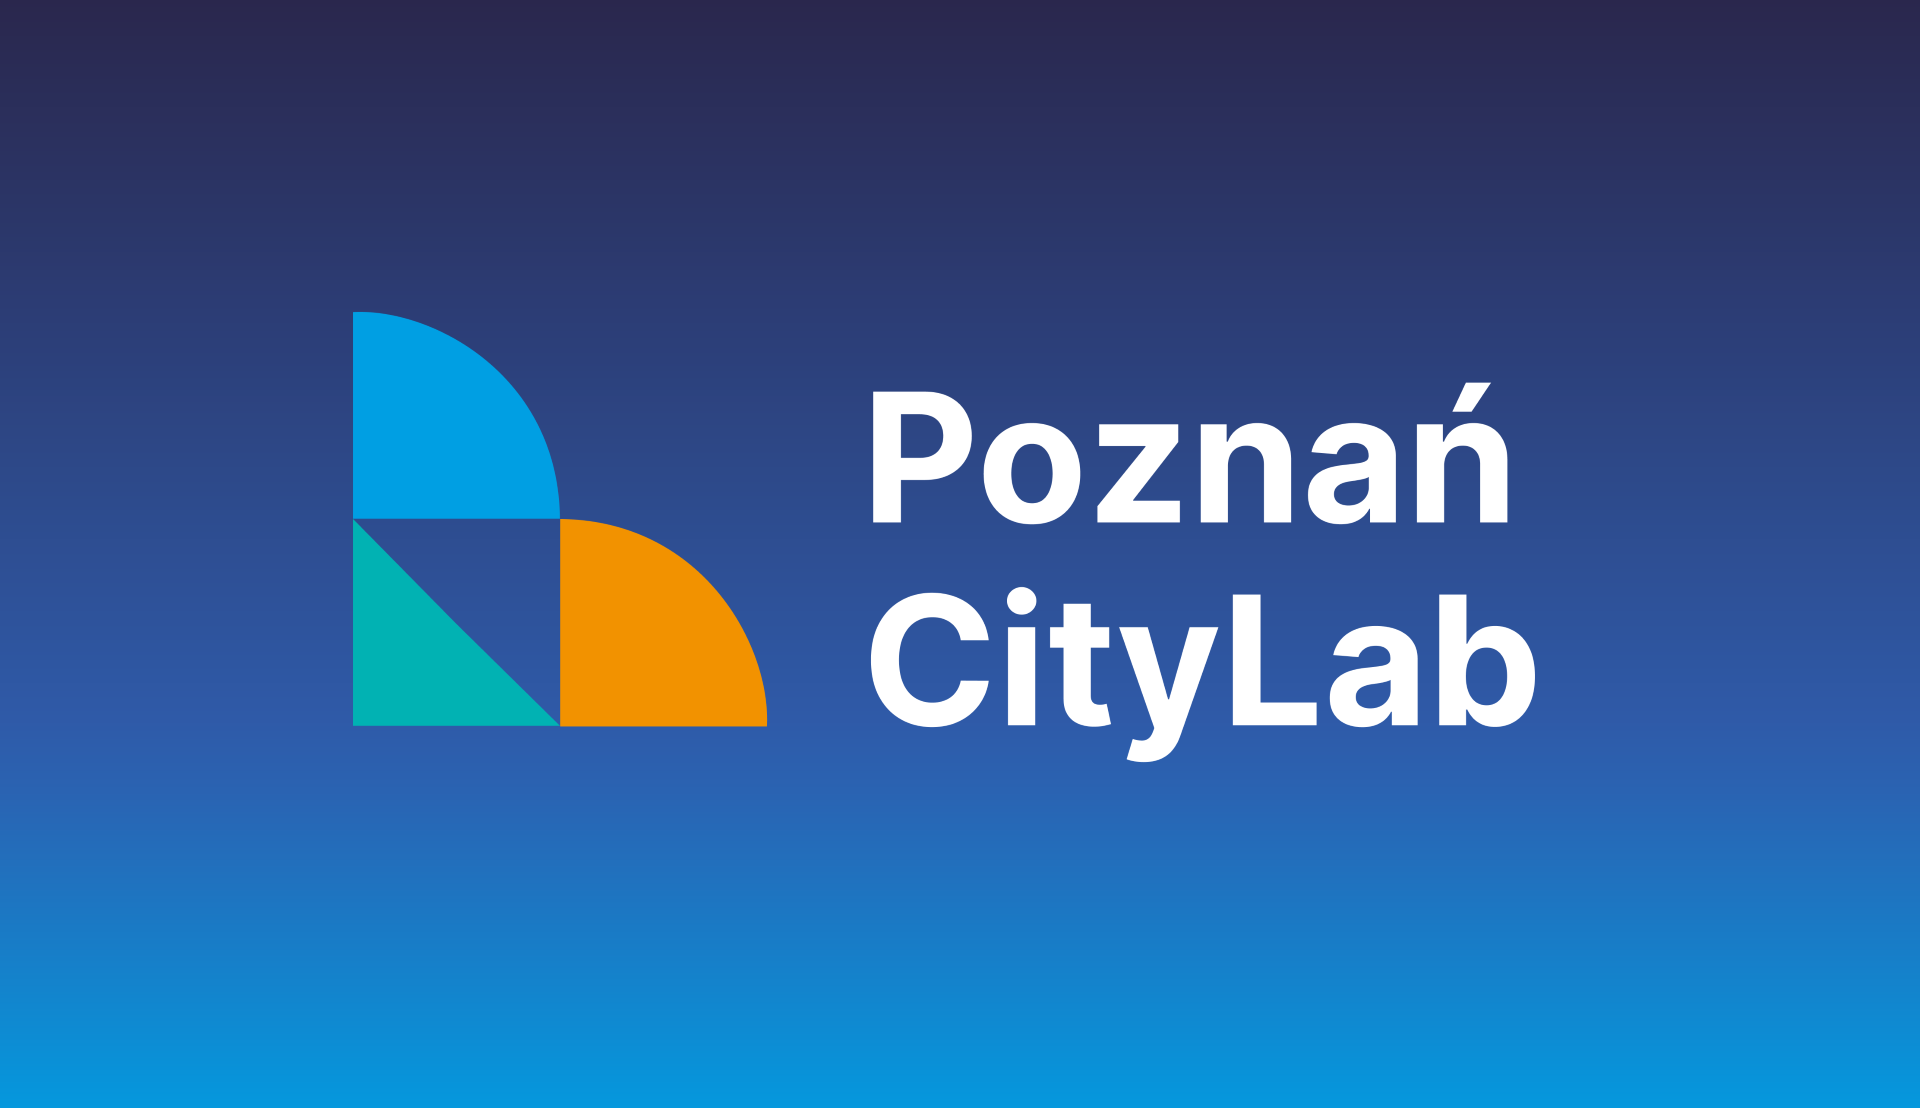 Obraz, na którym znajdują się trzy figury geometryczne oraz napis. Elementy stanowią logo Poznań CityLab, które znajduje się na gradietnowym tle.